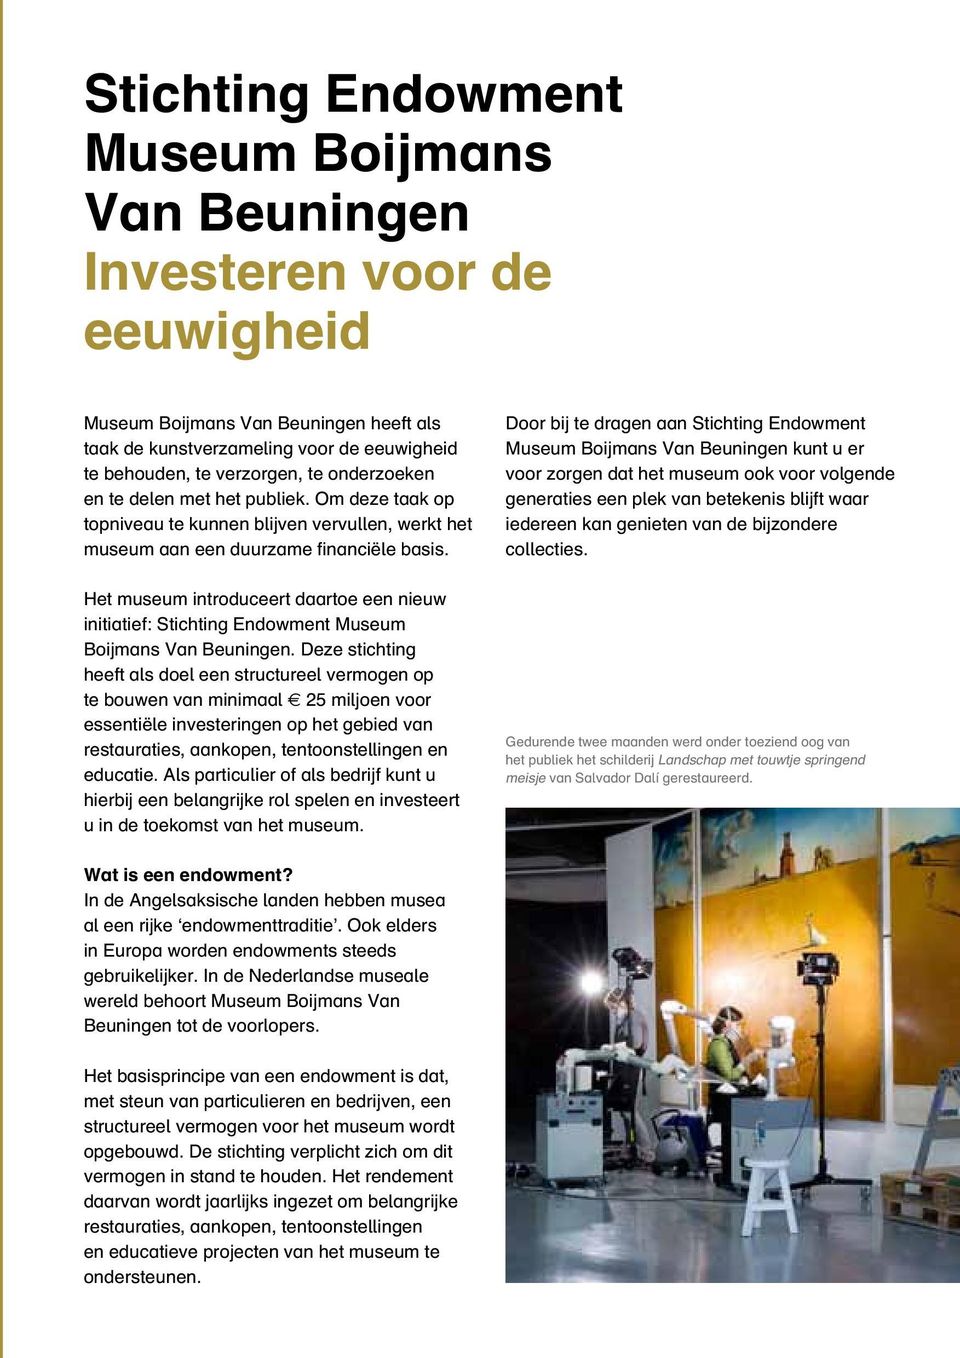 Het museum introduceert daartoe een nieuw initiatief: Stichting Endowment Museum Boijmans Van Beuningen.